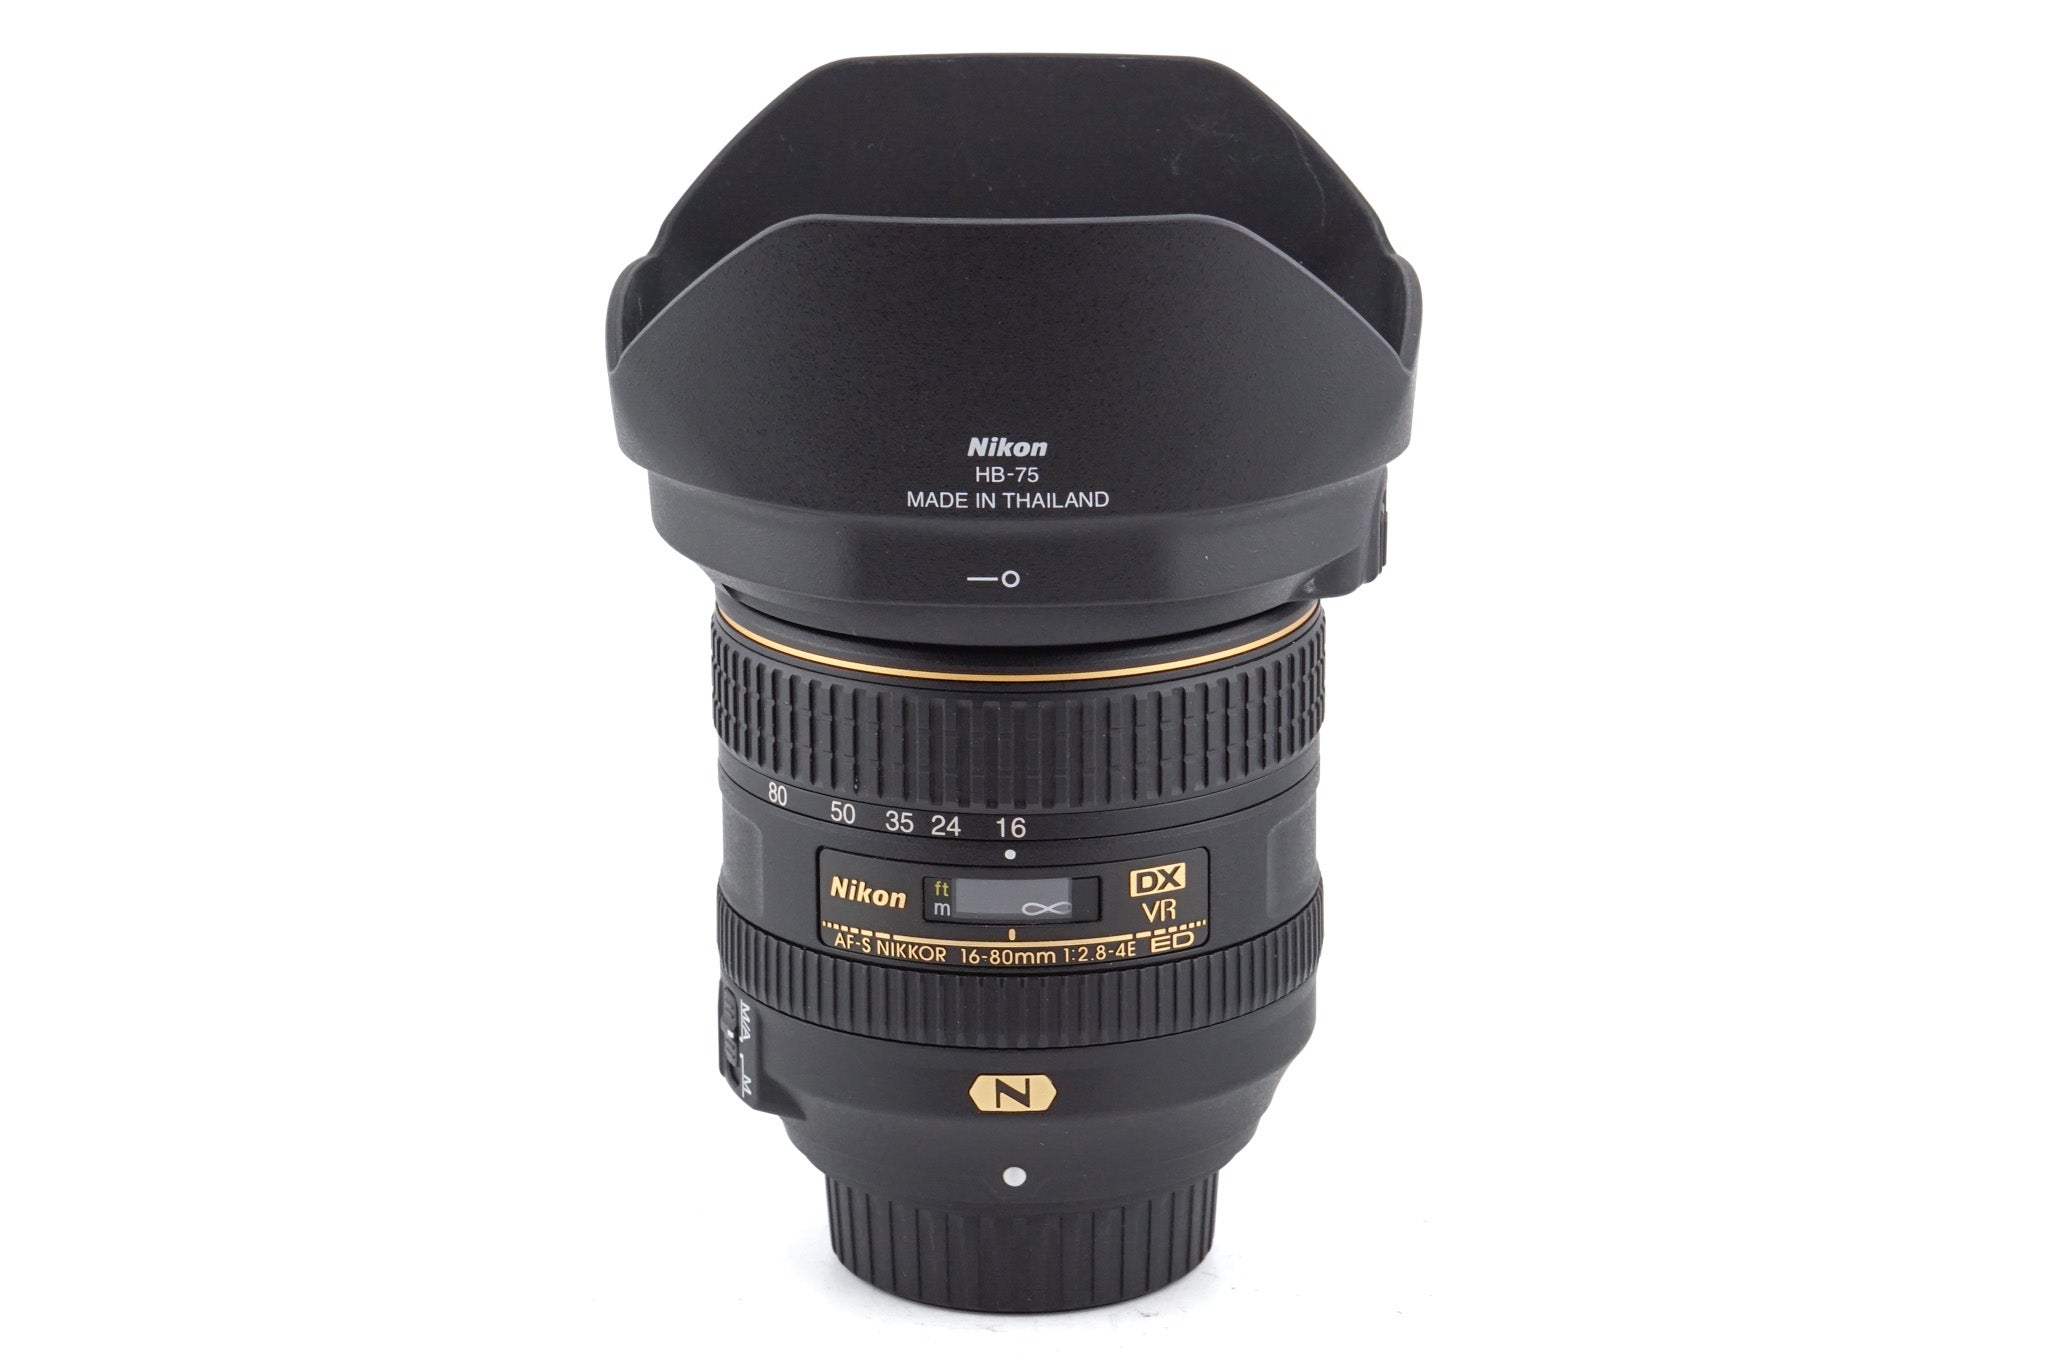 Nikon 16-80mm f2.8-4 AF-S Nikkor E Aspherical ED IF DX VR - Lens